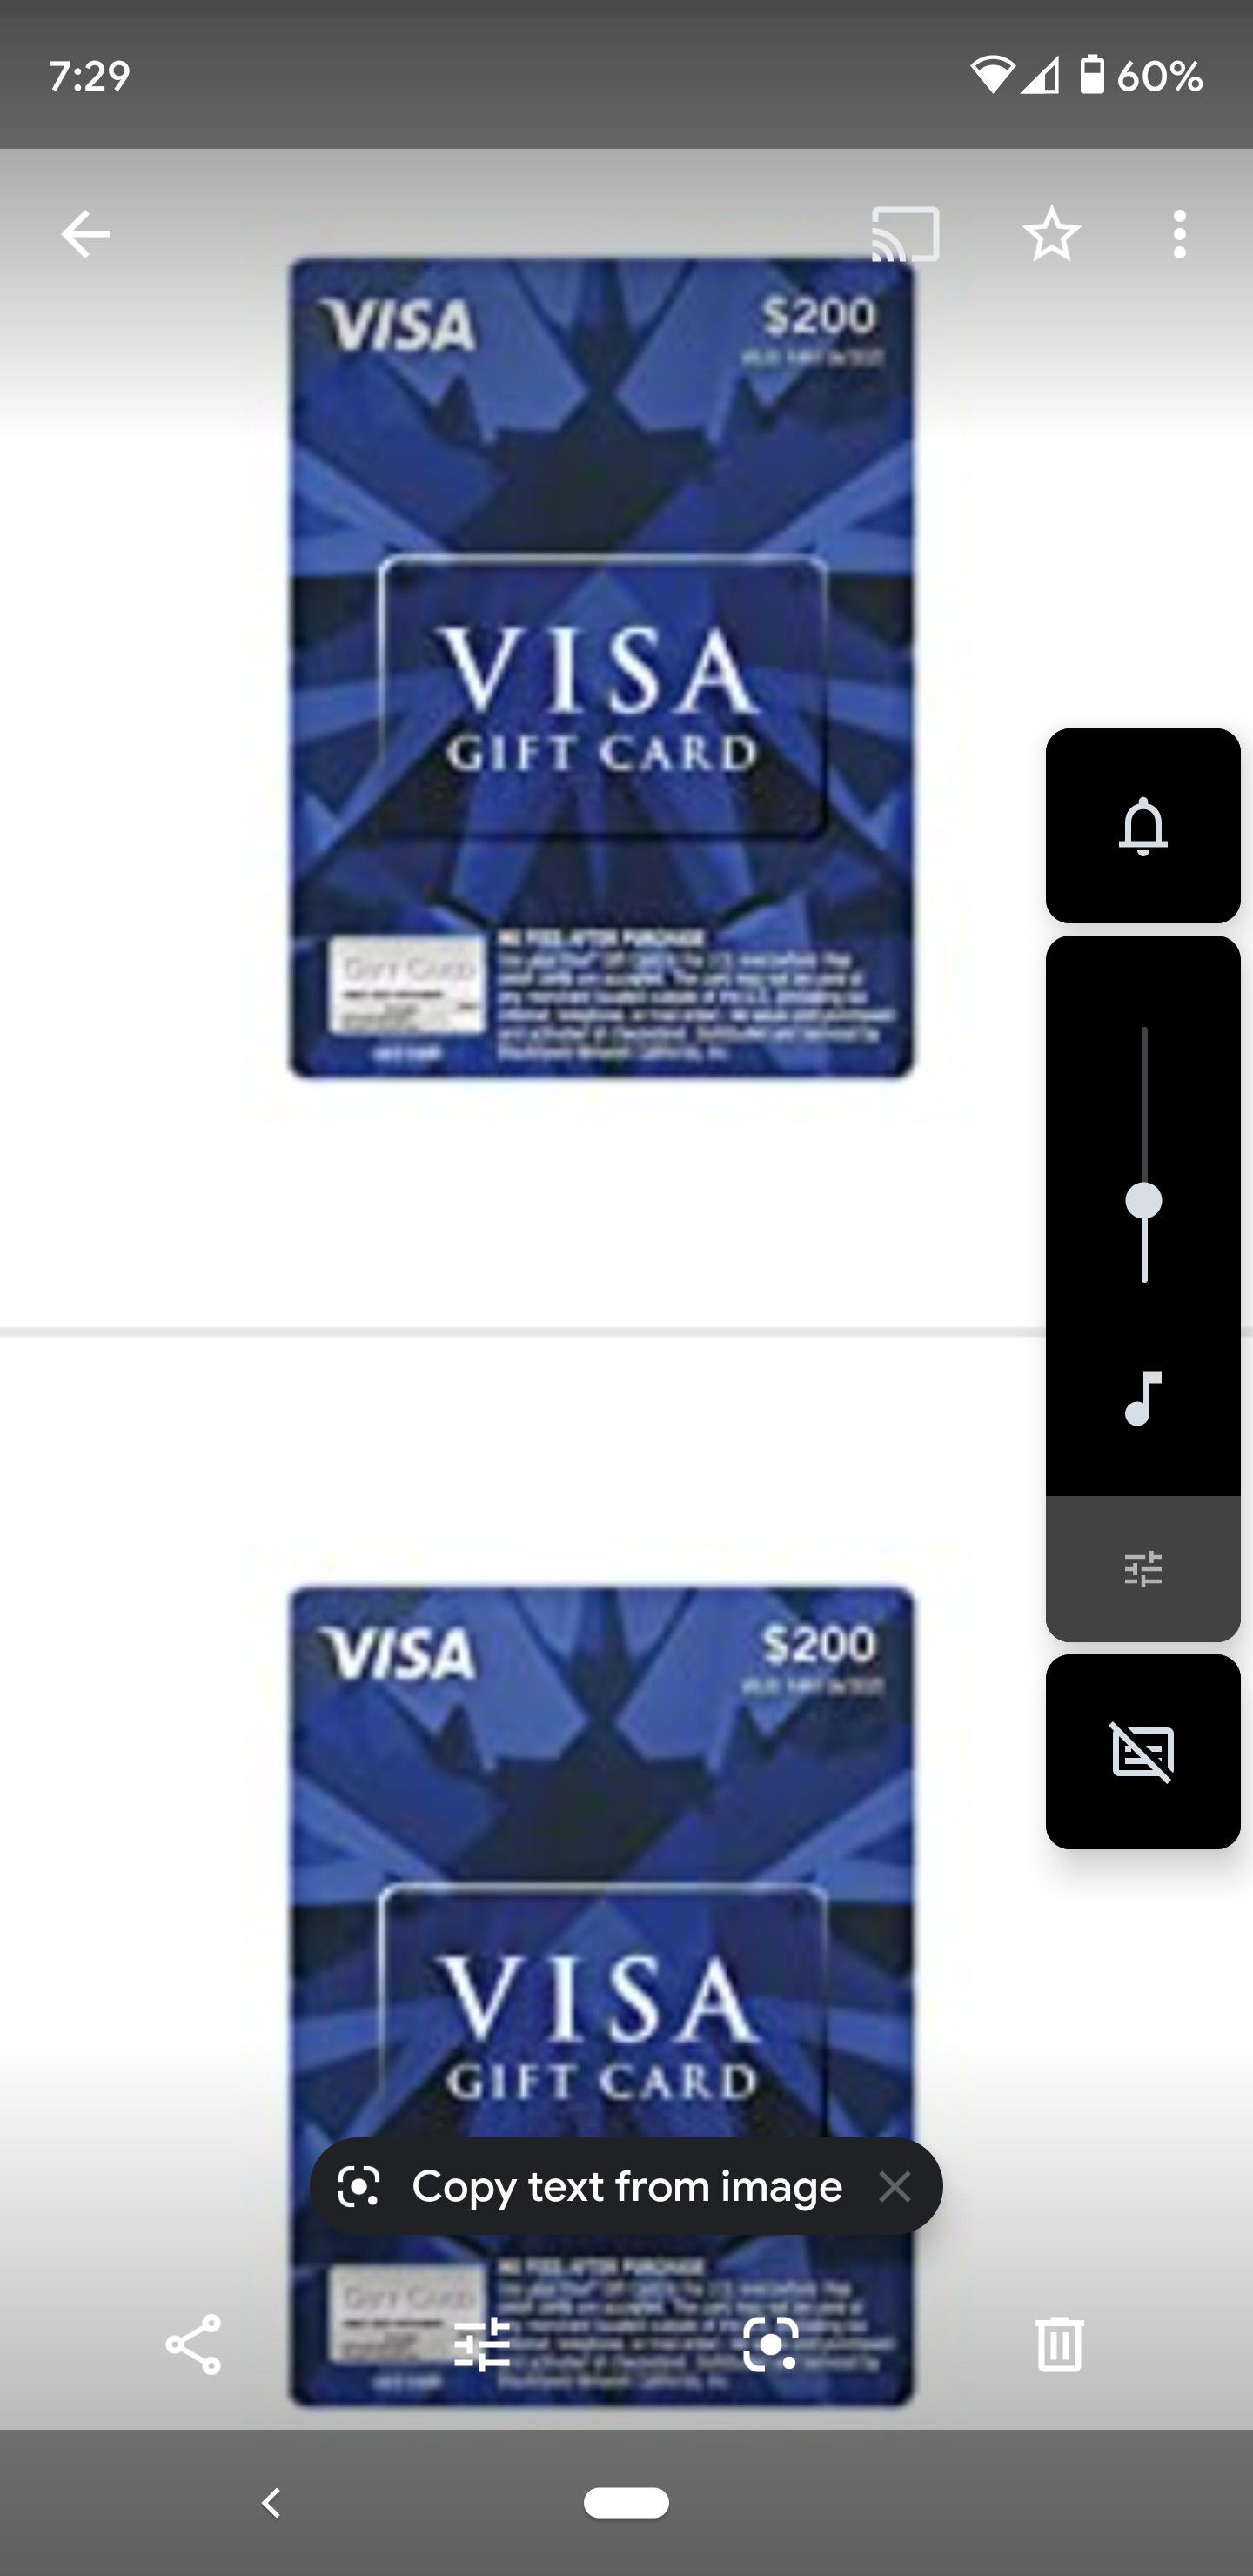 Selling visa cards